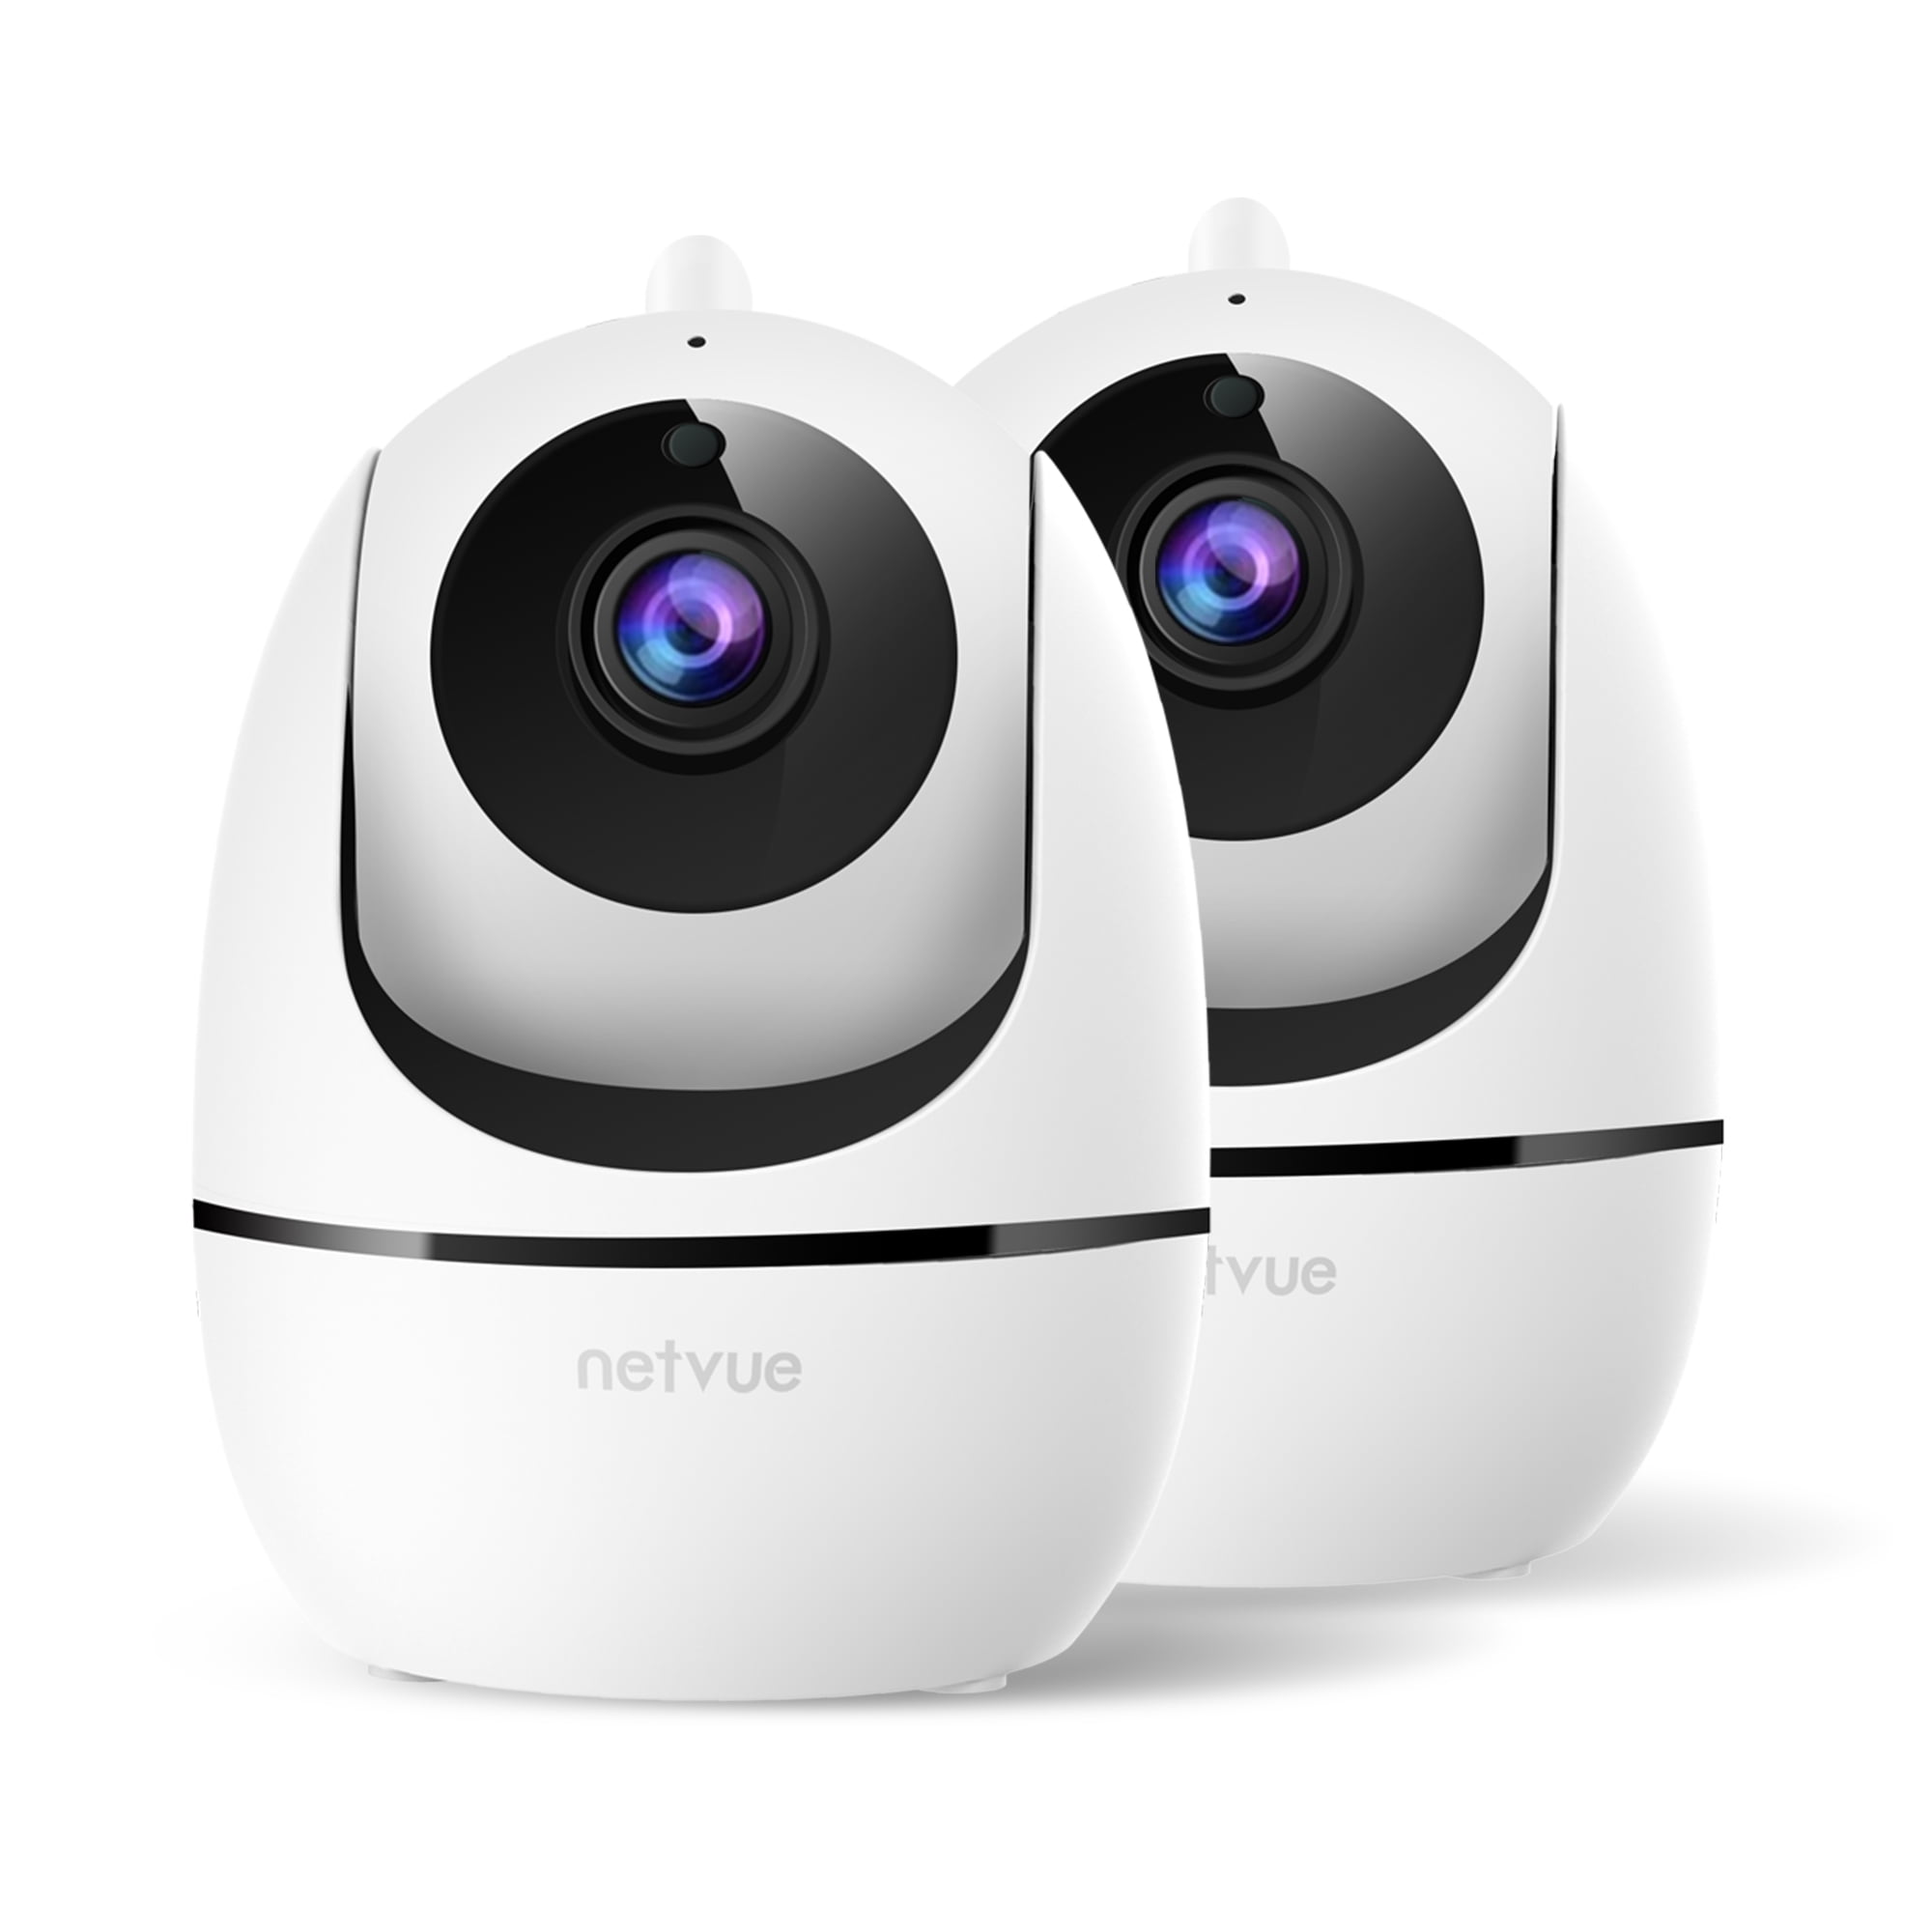 kawsara hightech sur LinkedIn : Caméra Surveillance WiFi Interieur, Netvue  Full HD 1080P Caméra IP sans…